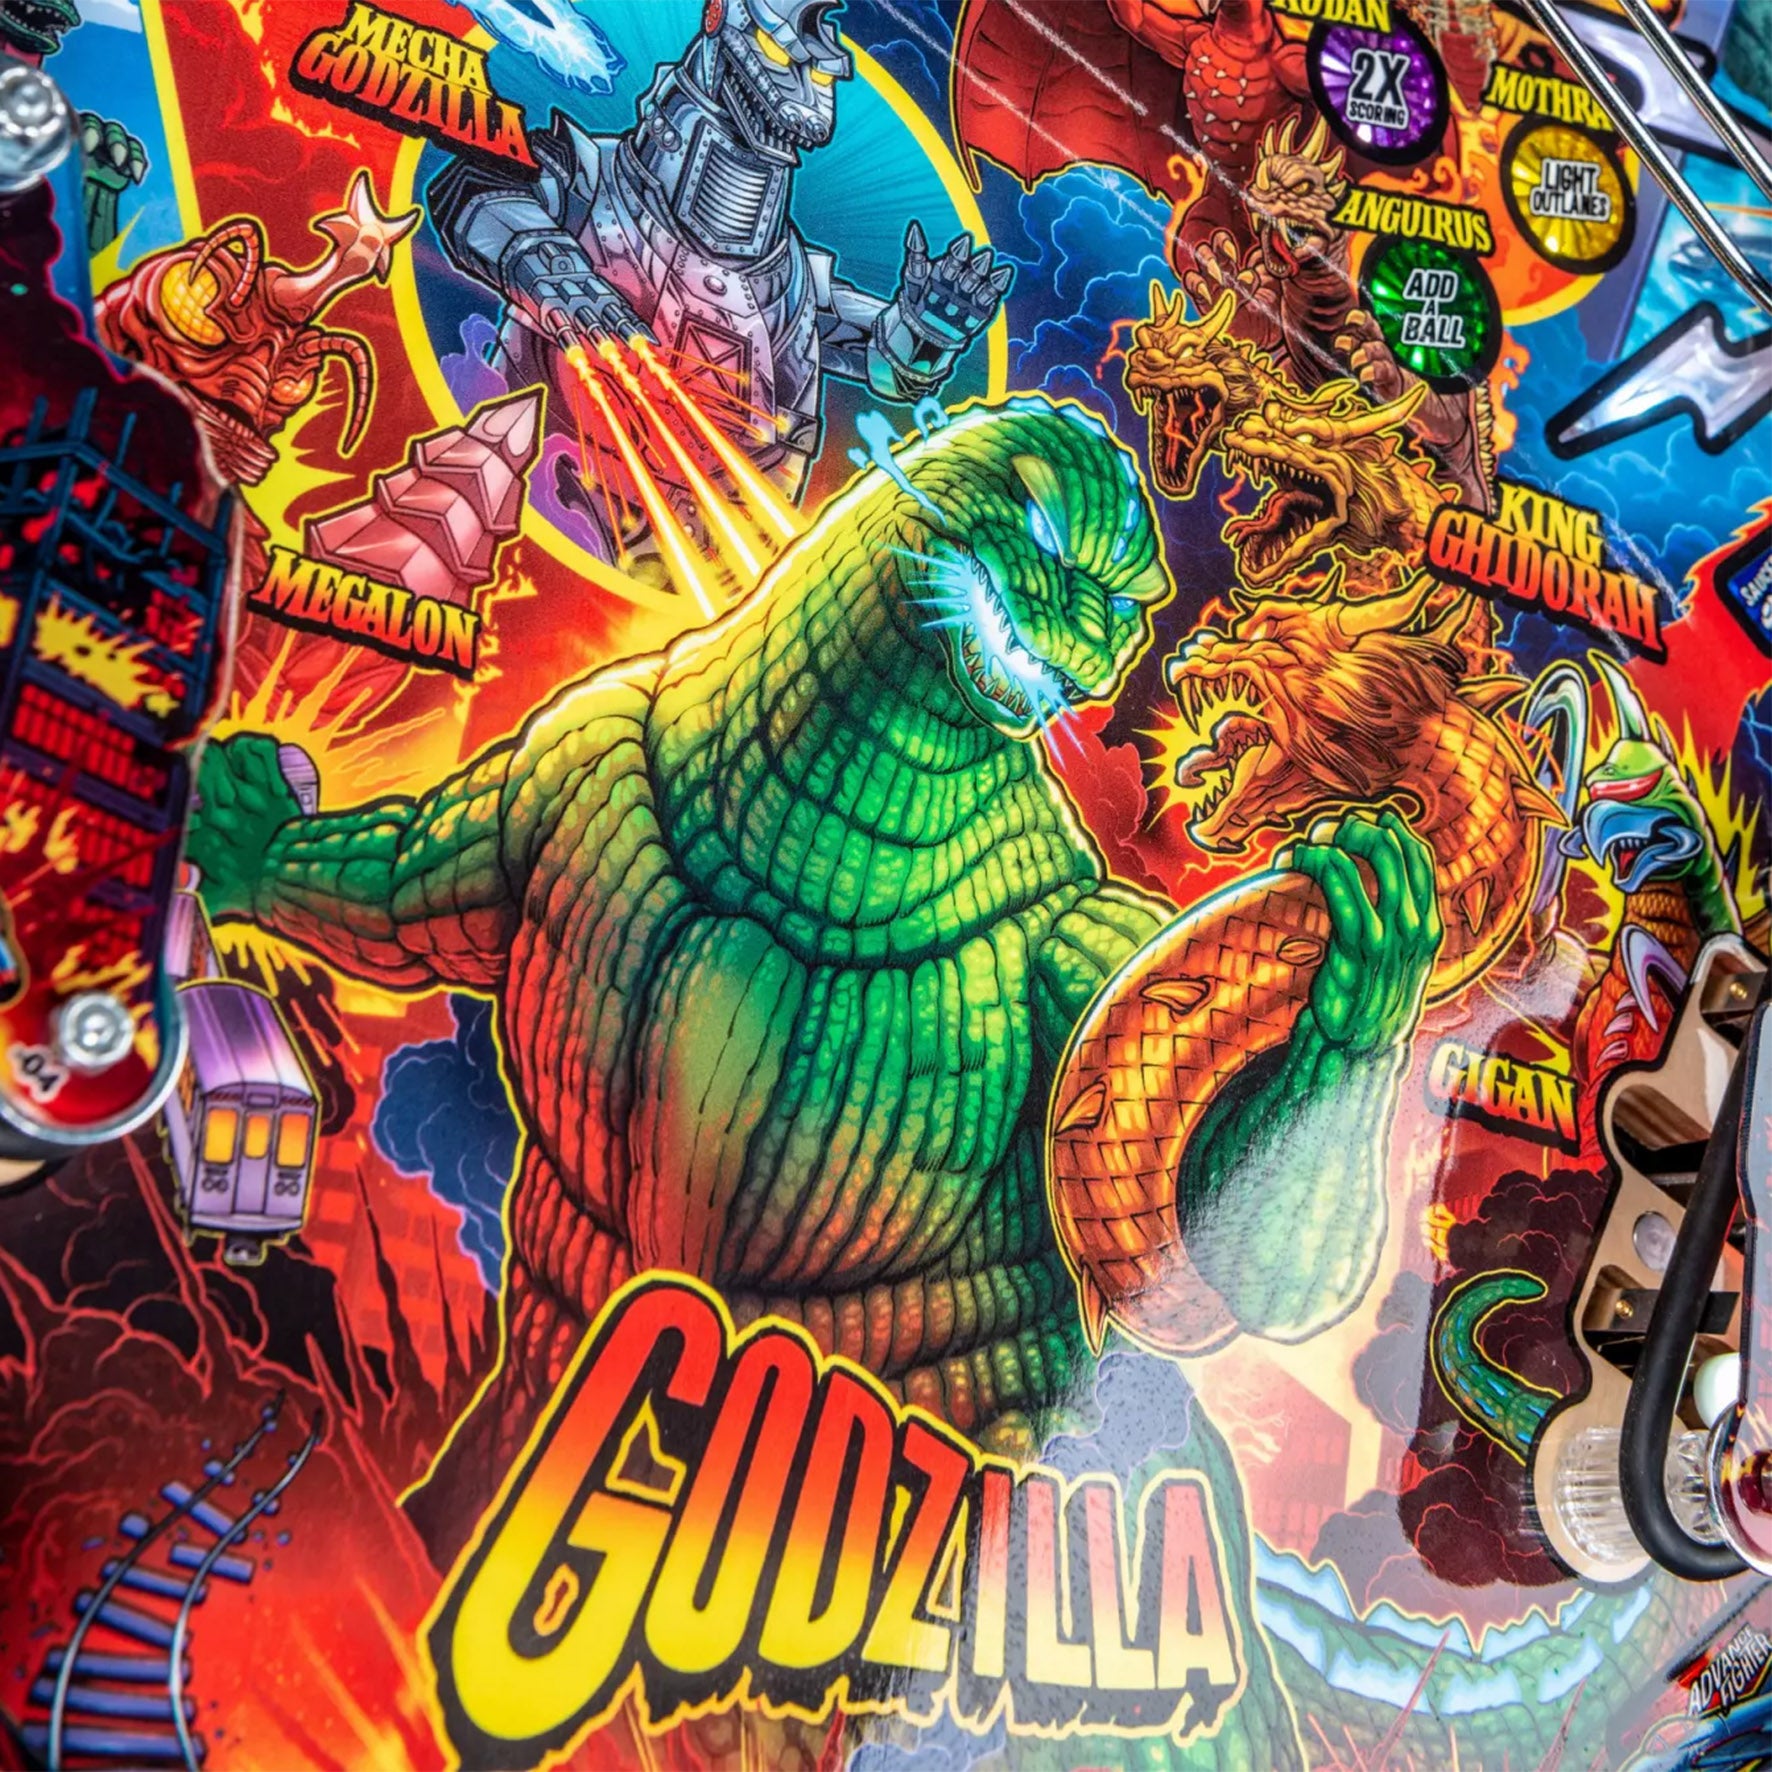 2021 Godzilla Pro Edition Pinball Machine  by Stern